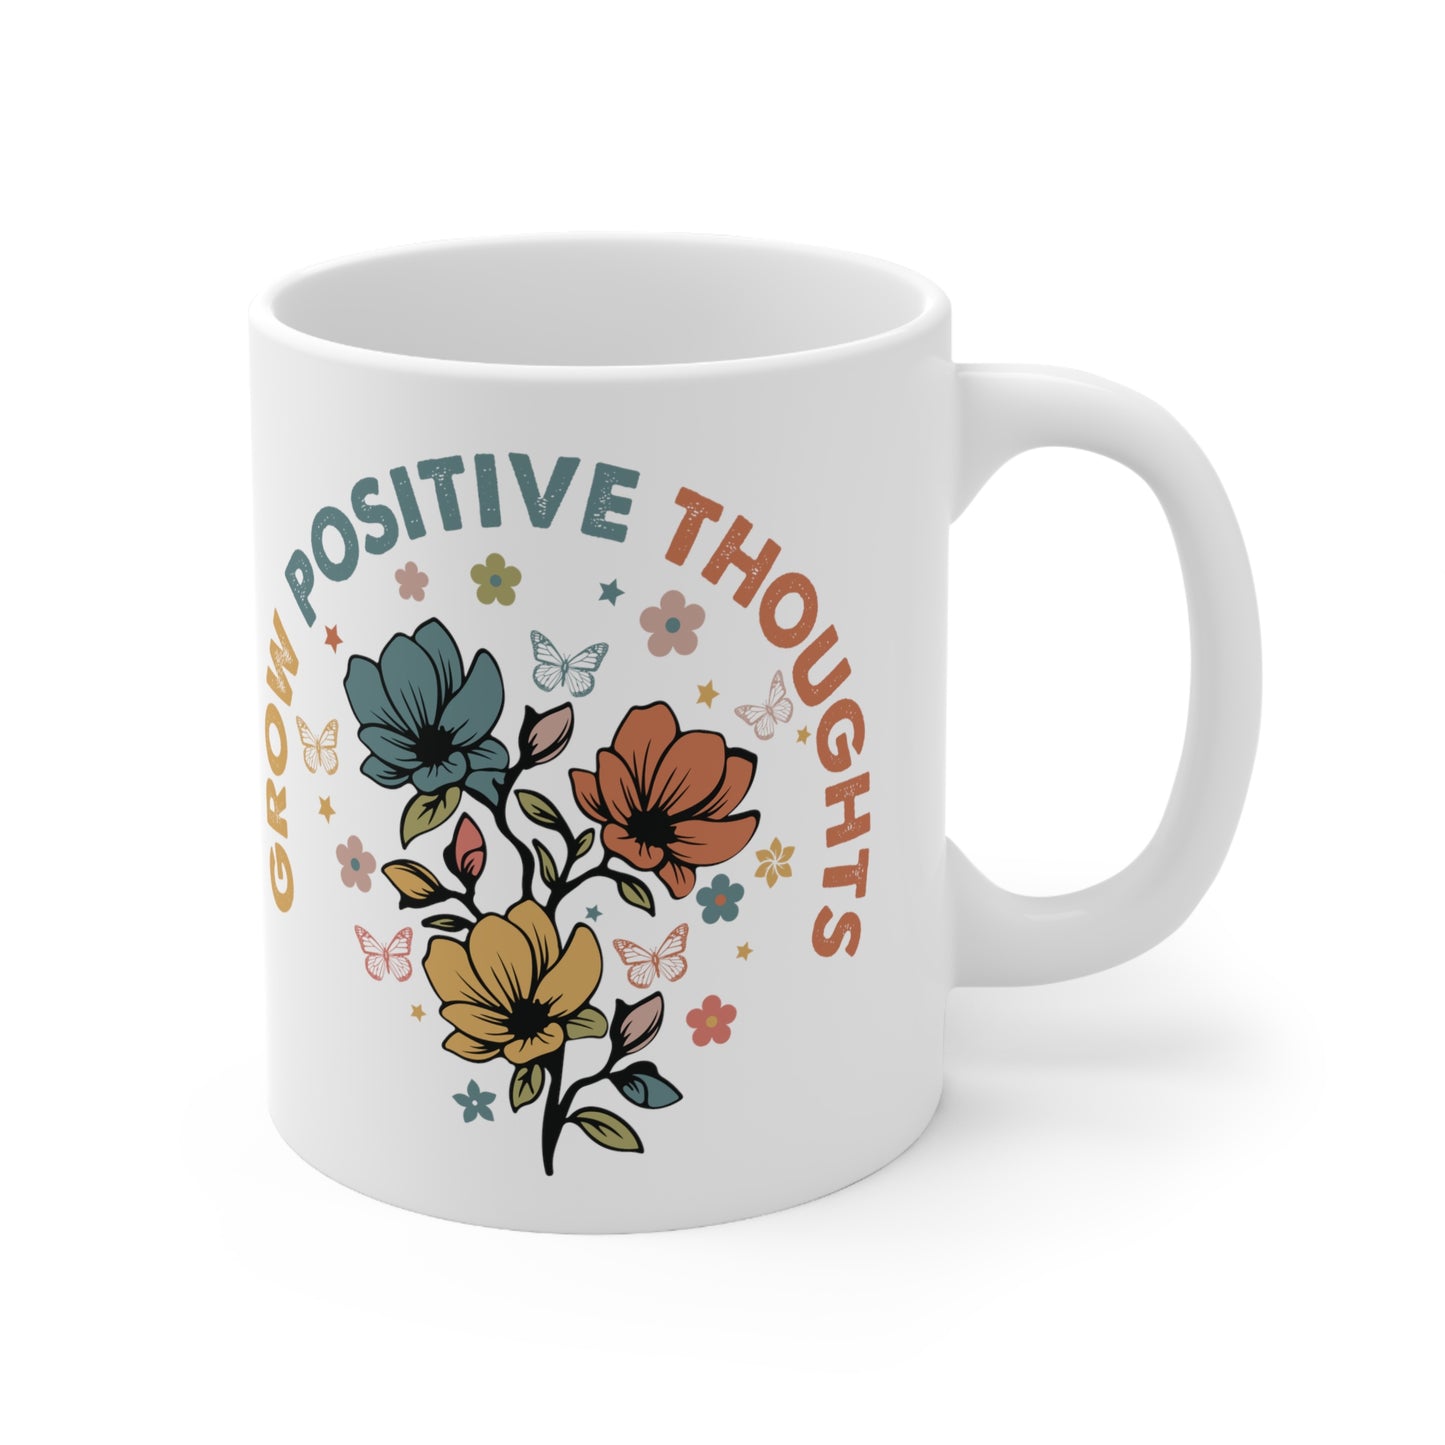 "Grow Positive Thoughts Coffee Mug"